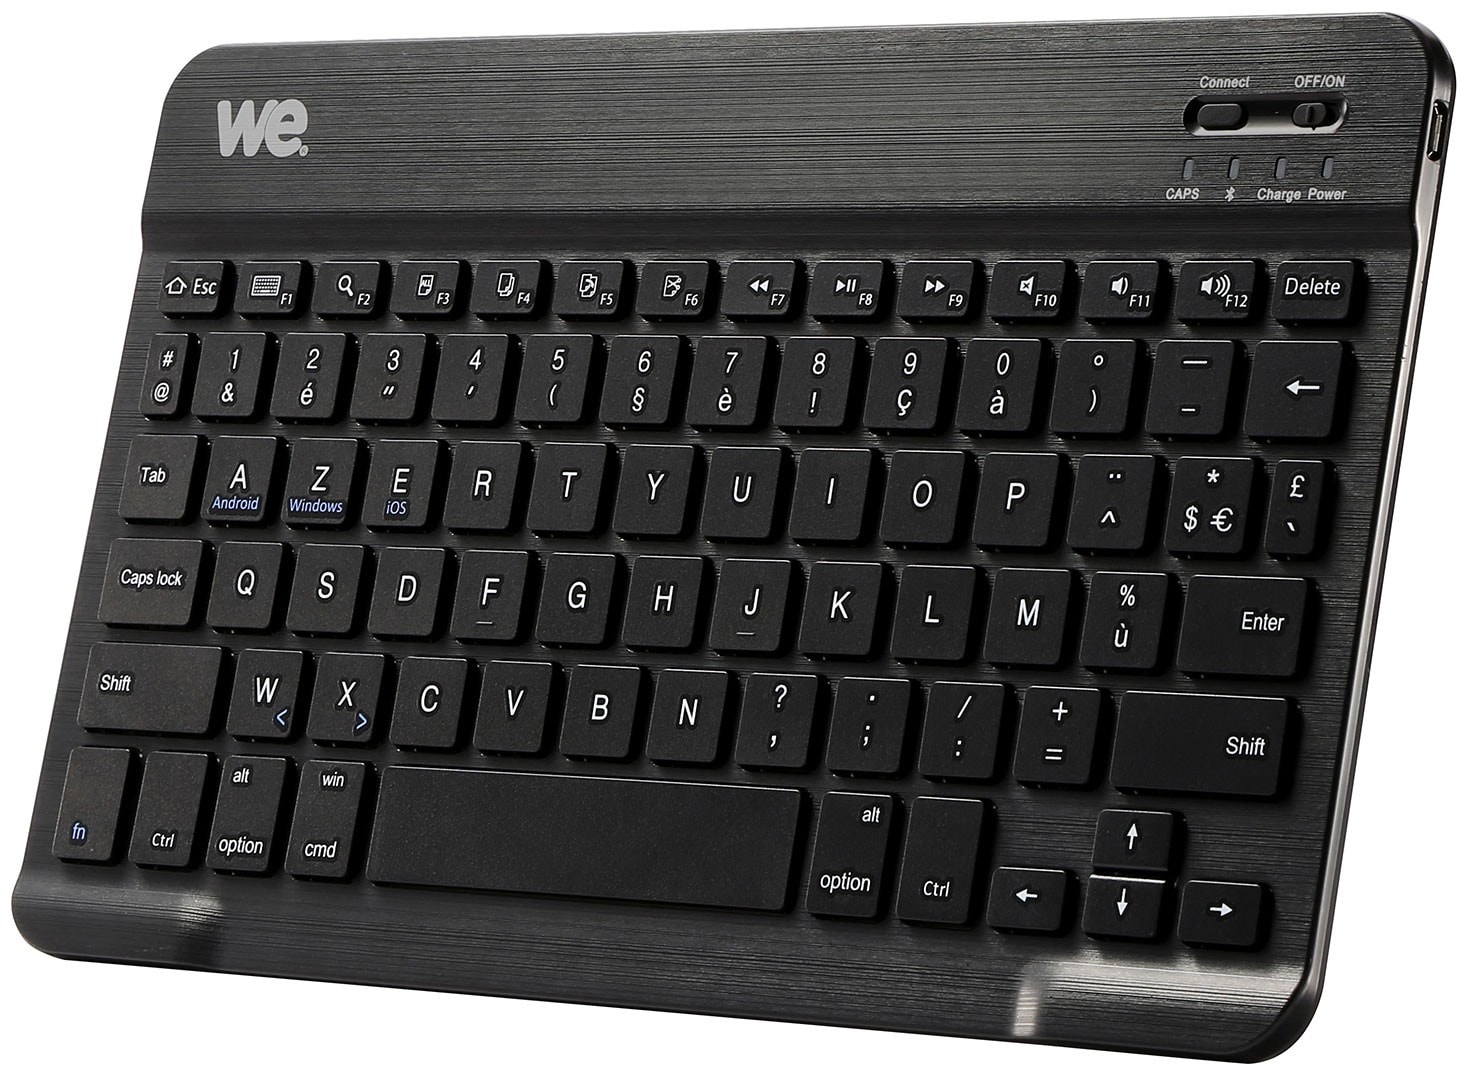 Mini clavier sans fil universel sans fil Bluetooth - Petit clavier